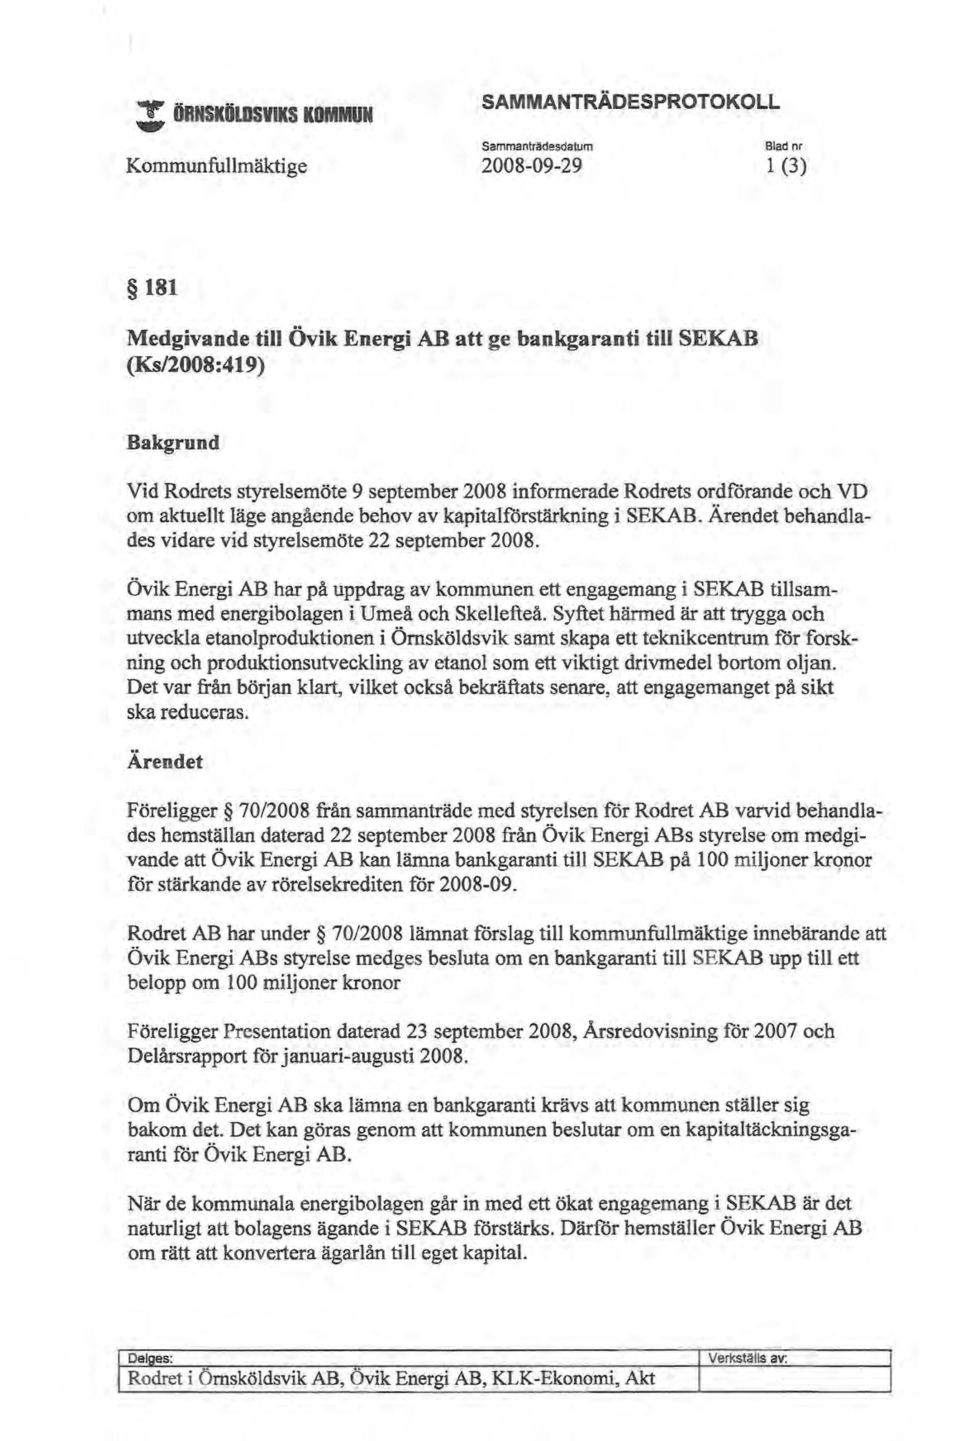 Ärendet behandlades vidare vid styrelsemöte 22 september 2008. Övik Energi AB har på uppdrag av kommunen ett engagemang i SEKAB tillsammans med energibolagen i Umeå och Skellefteå.